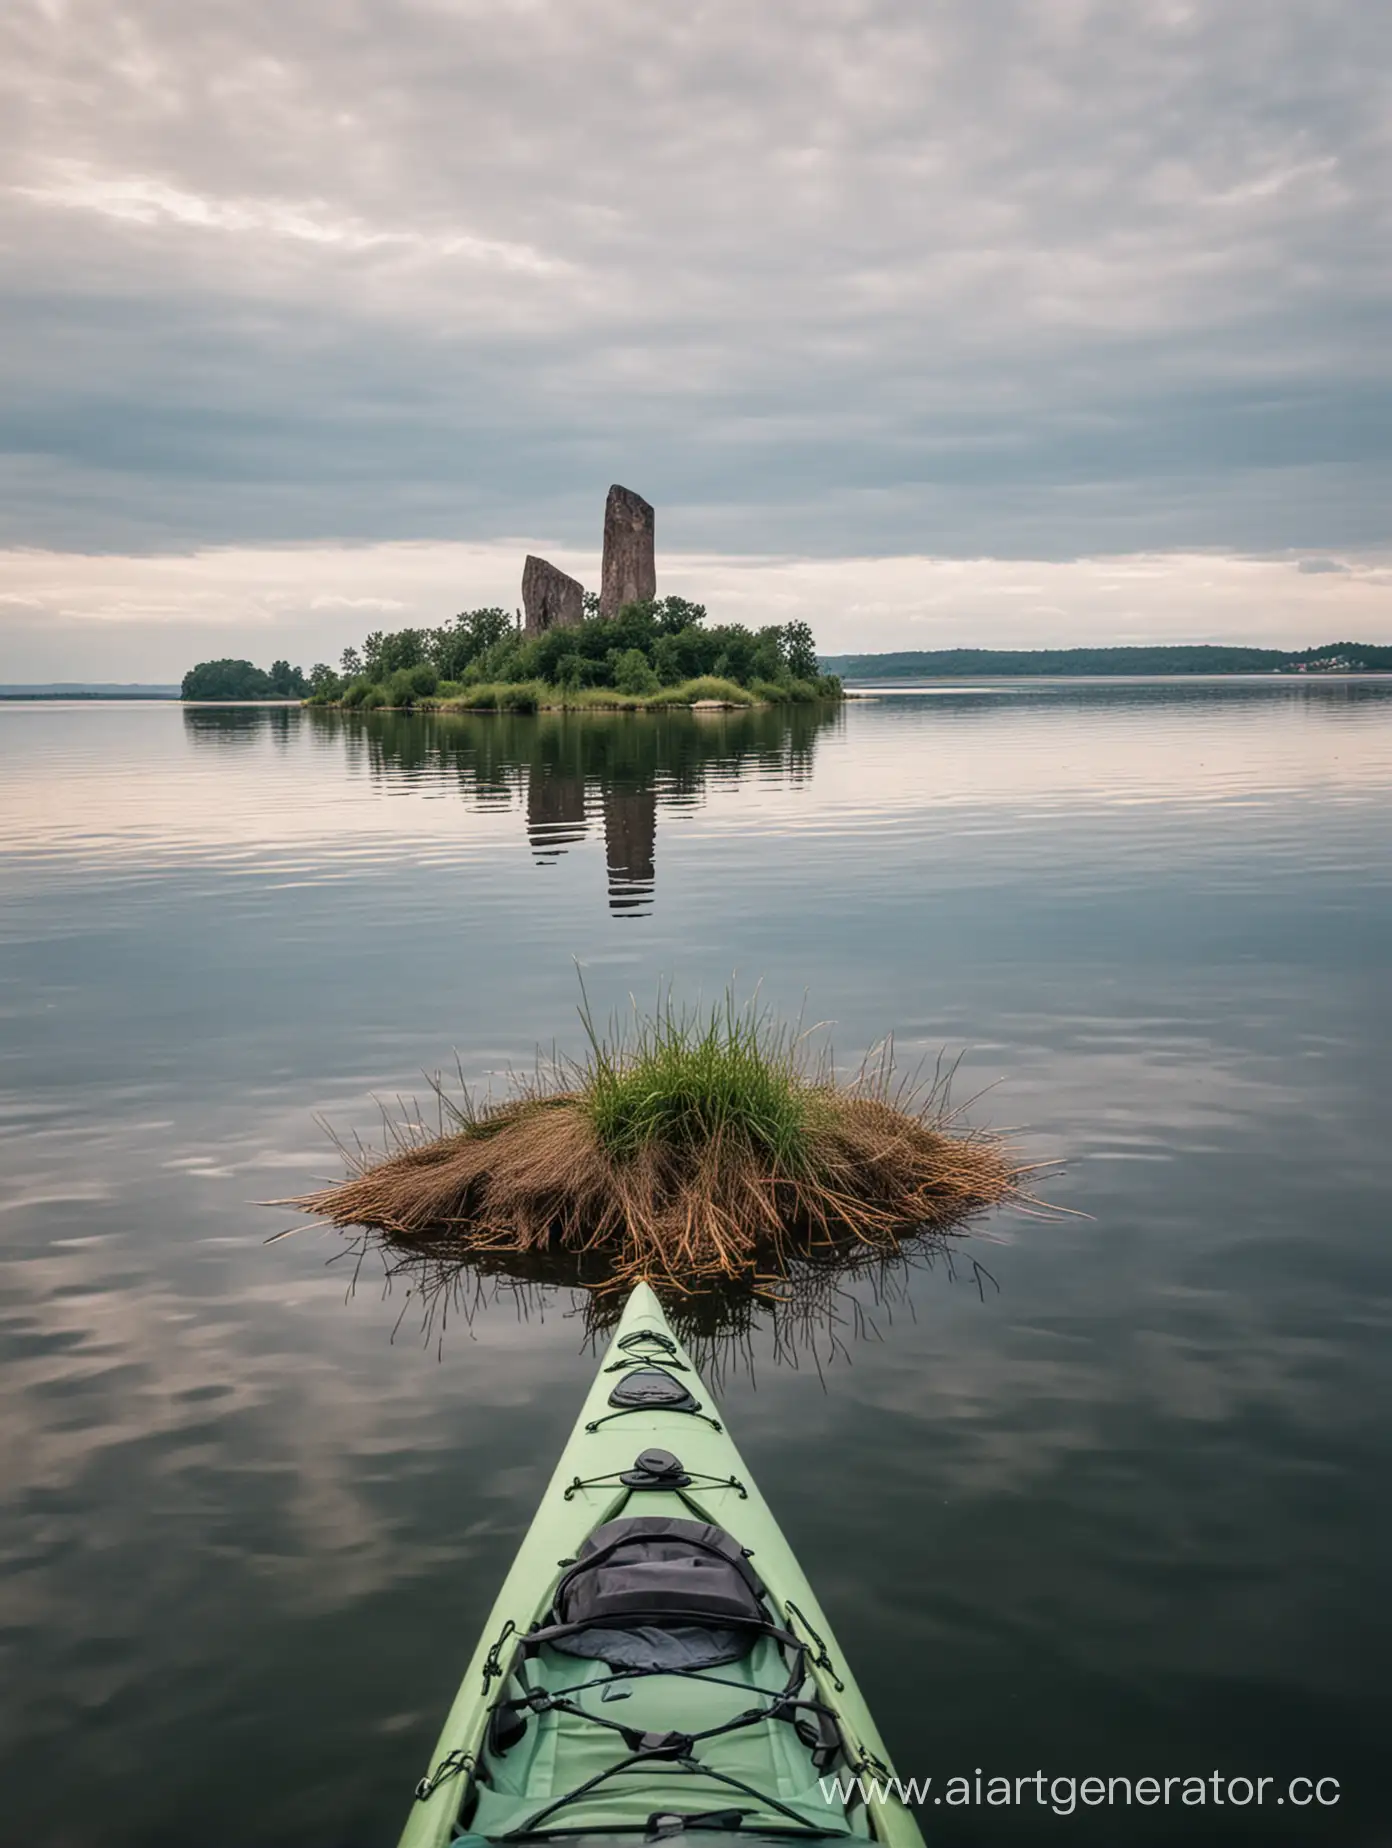 Kayaking-Adventure-to-Gibonov-Island-Monument-Zalew-Sulejowski-Lake-Poland